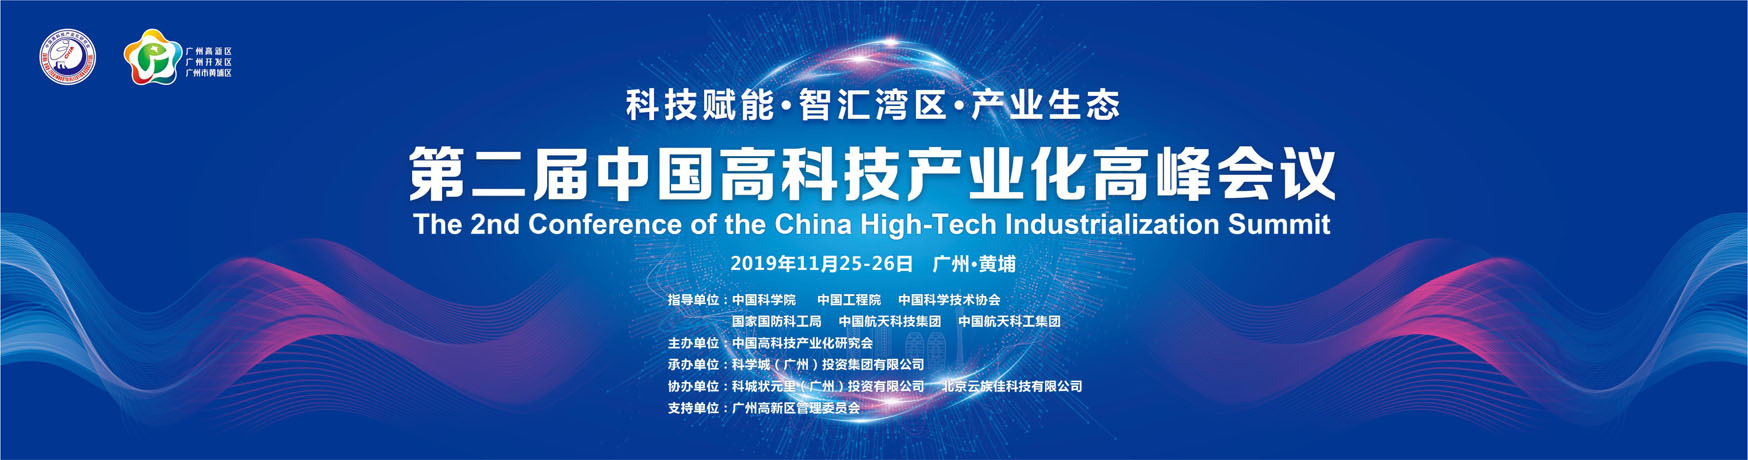 第二届中国高科技产业化高峰会议在广州高新区召开